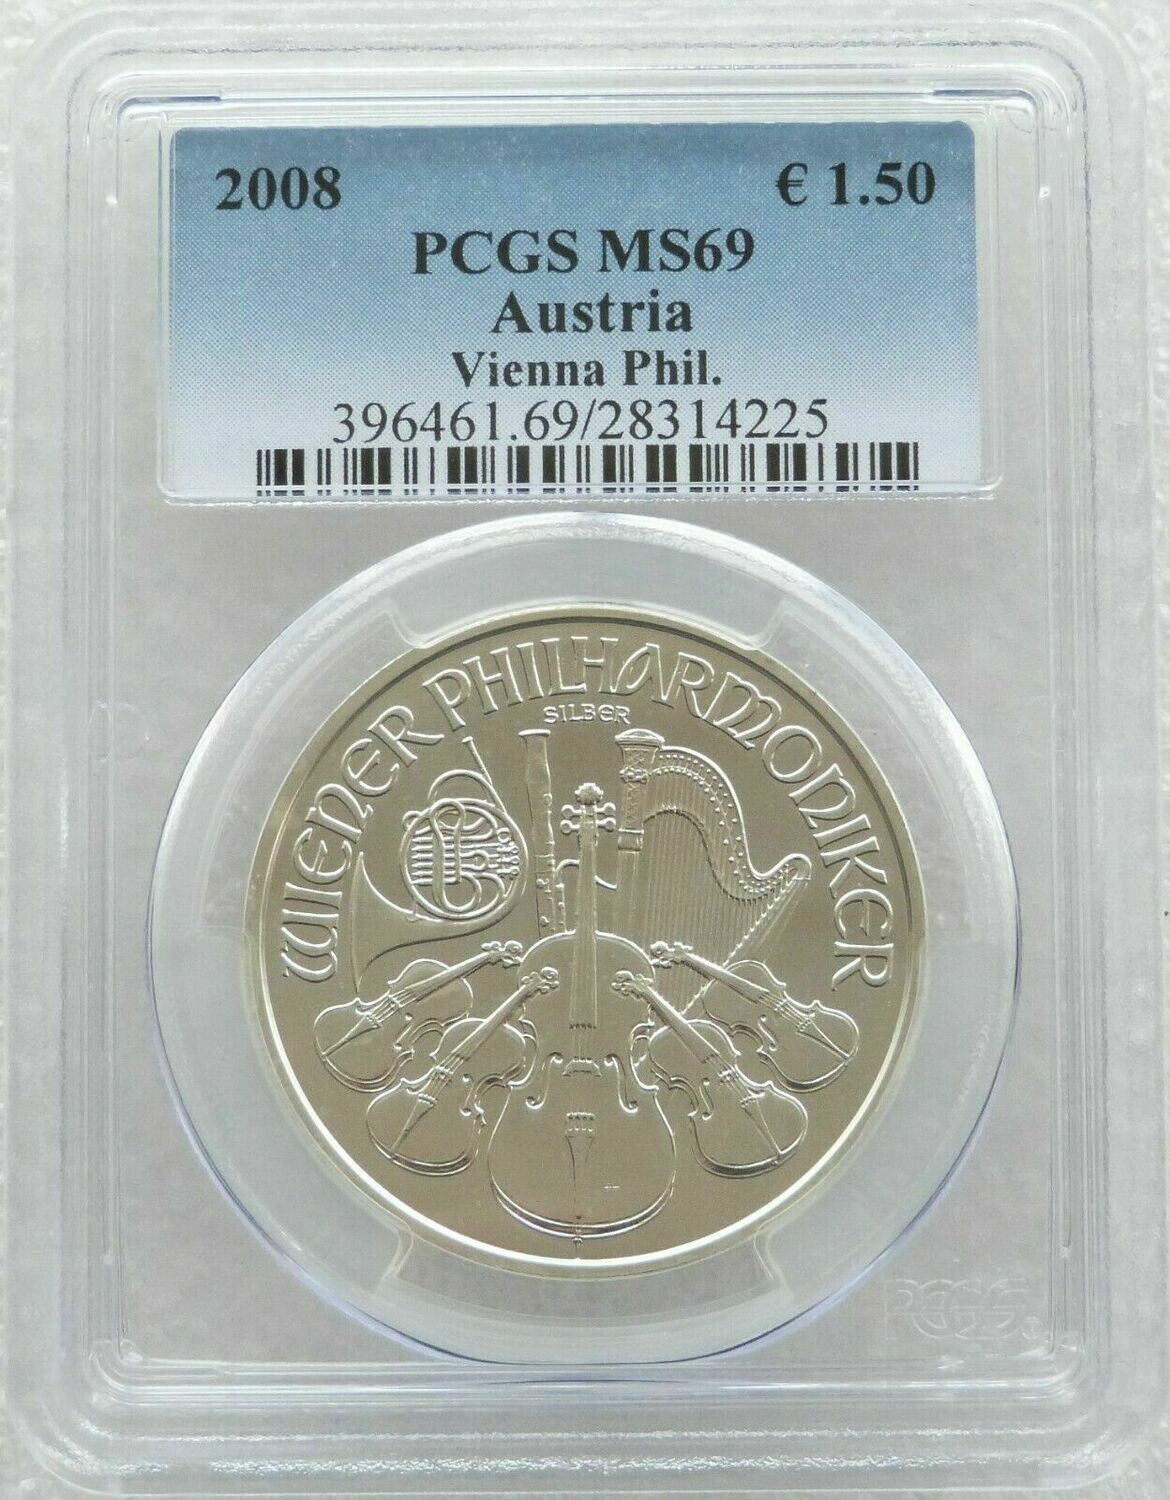 2008 Austria Vienna Philharmonic 1.5 Euro Silver 1oz Coin PCGS MS69 - First Year